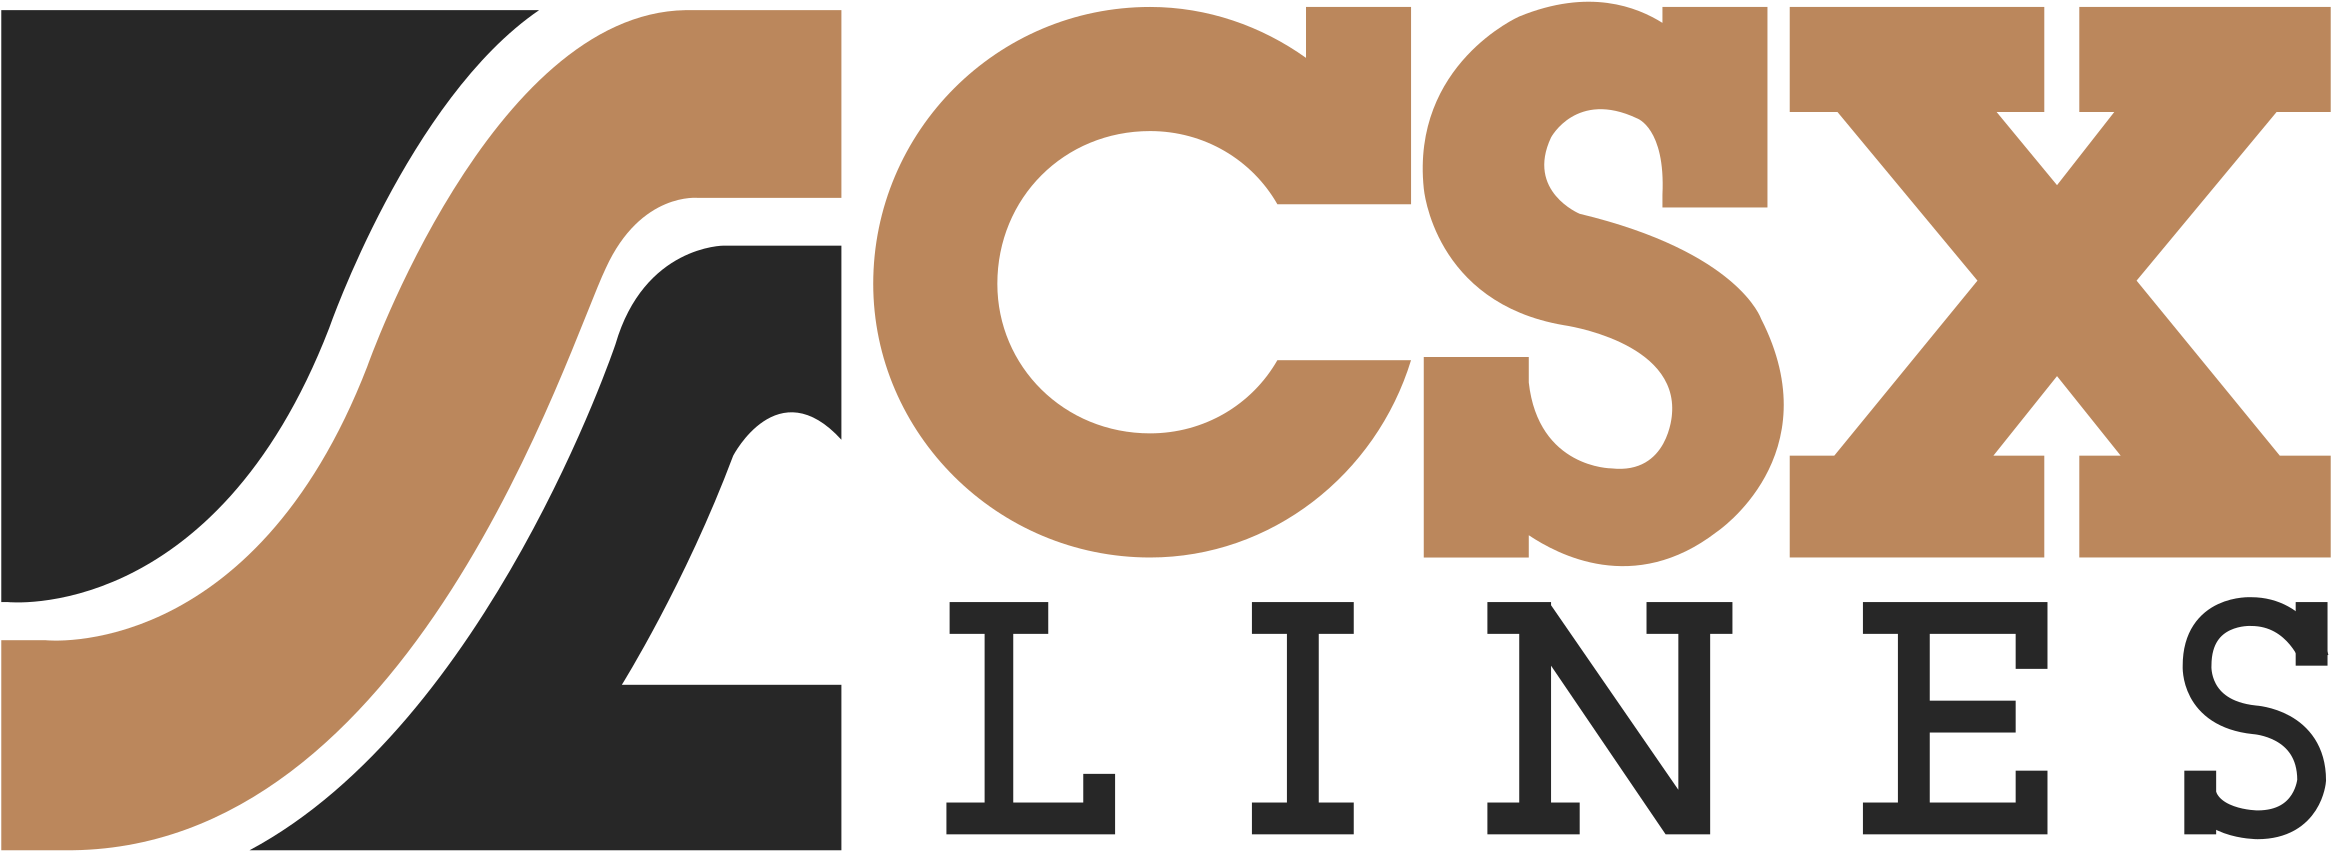 Csx Lines Logo Png Transparent - Csx Transportation (2400x2400), Png Download